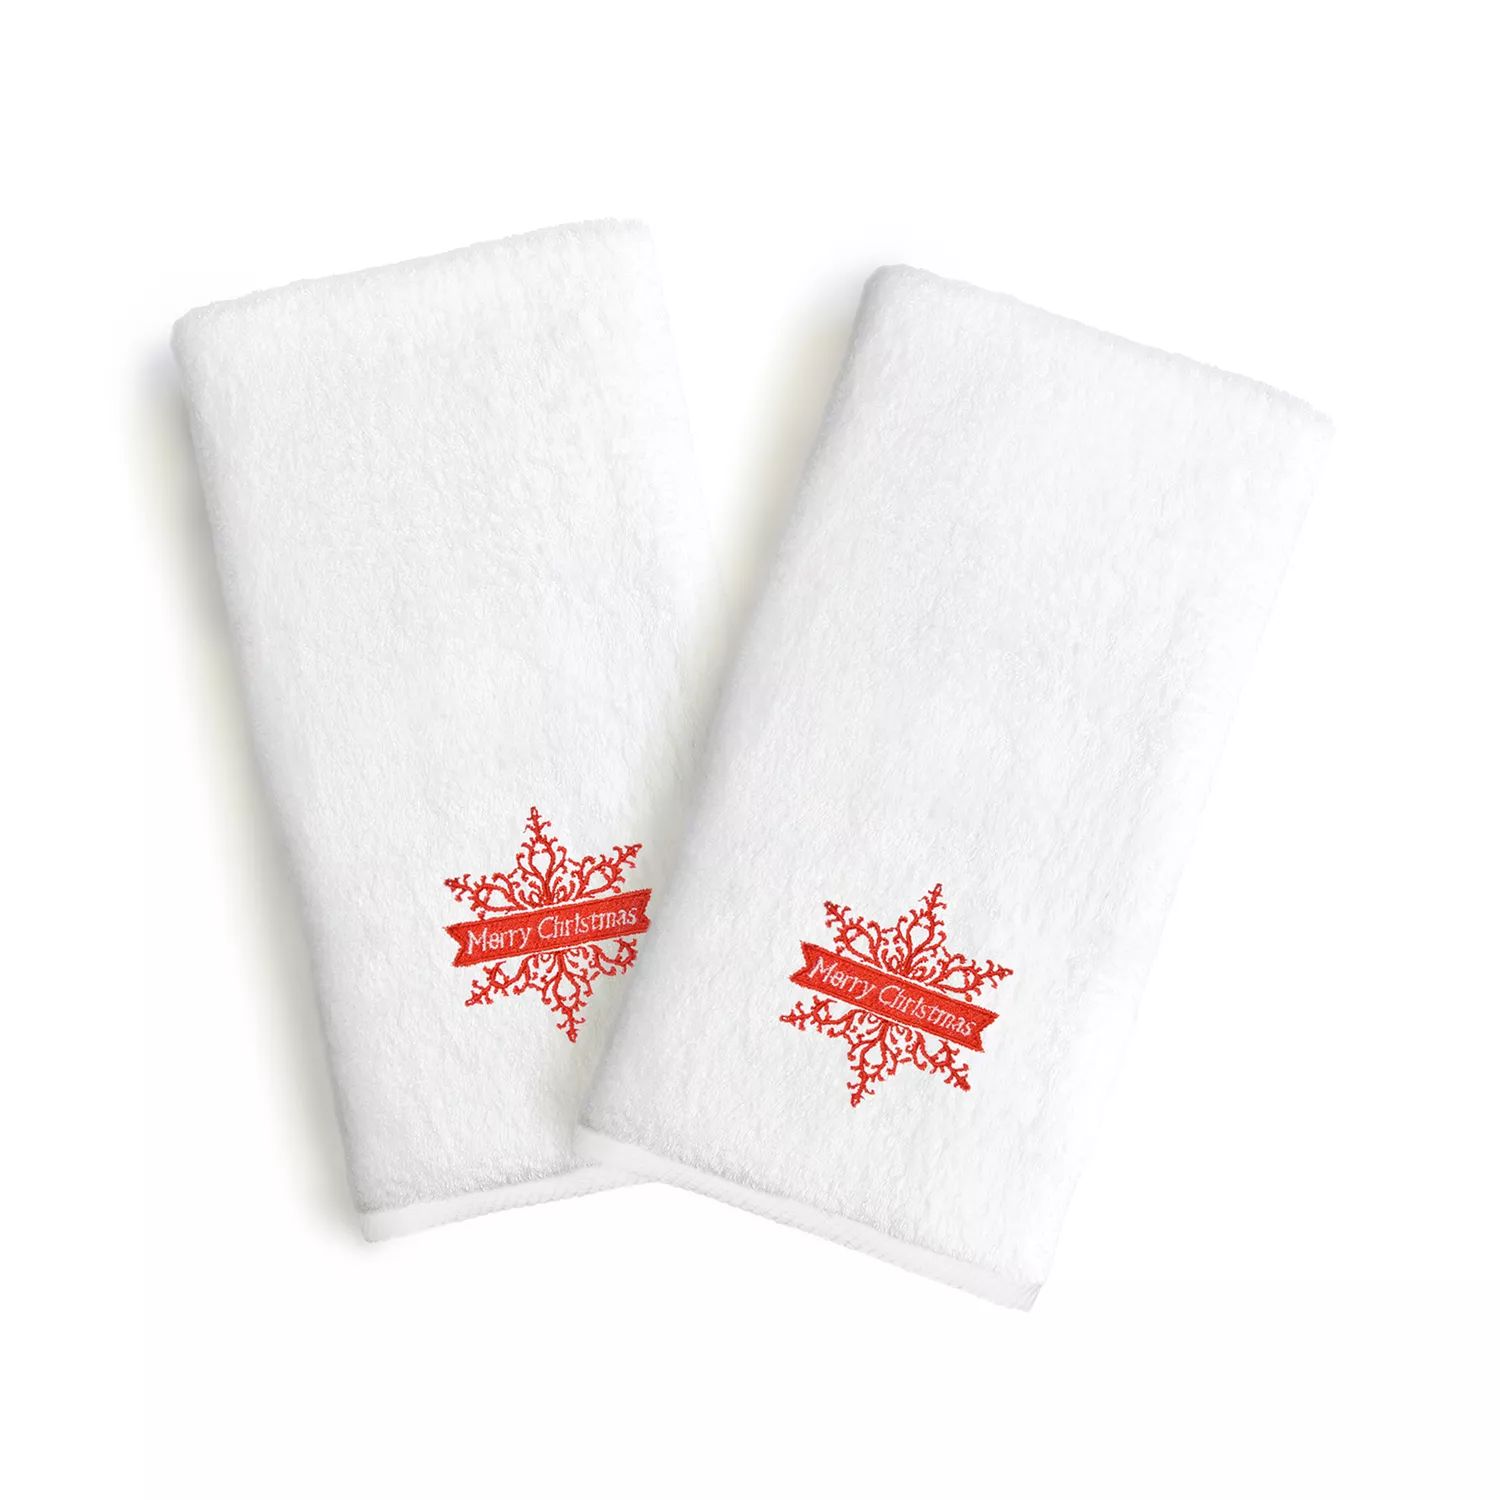 Linum Текстиль для дома Снежинка Праздничная вышивка Роскошные полотенца для рук в упаковке из 2 штук printio шоколадка 3 5×3 5 см merry christmas